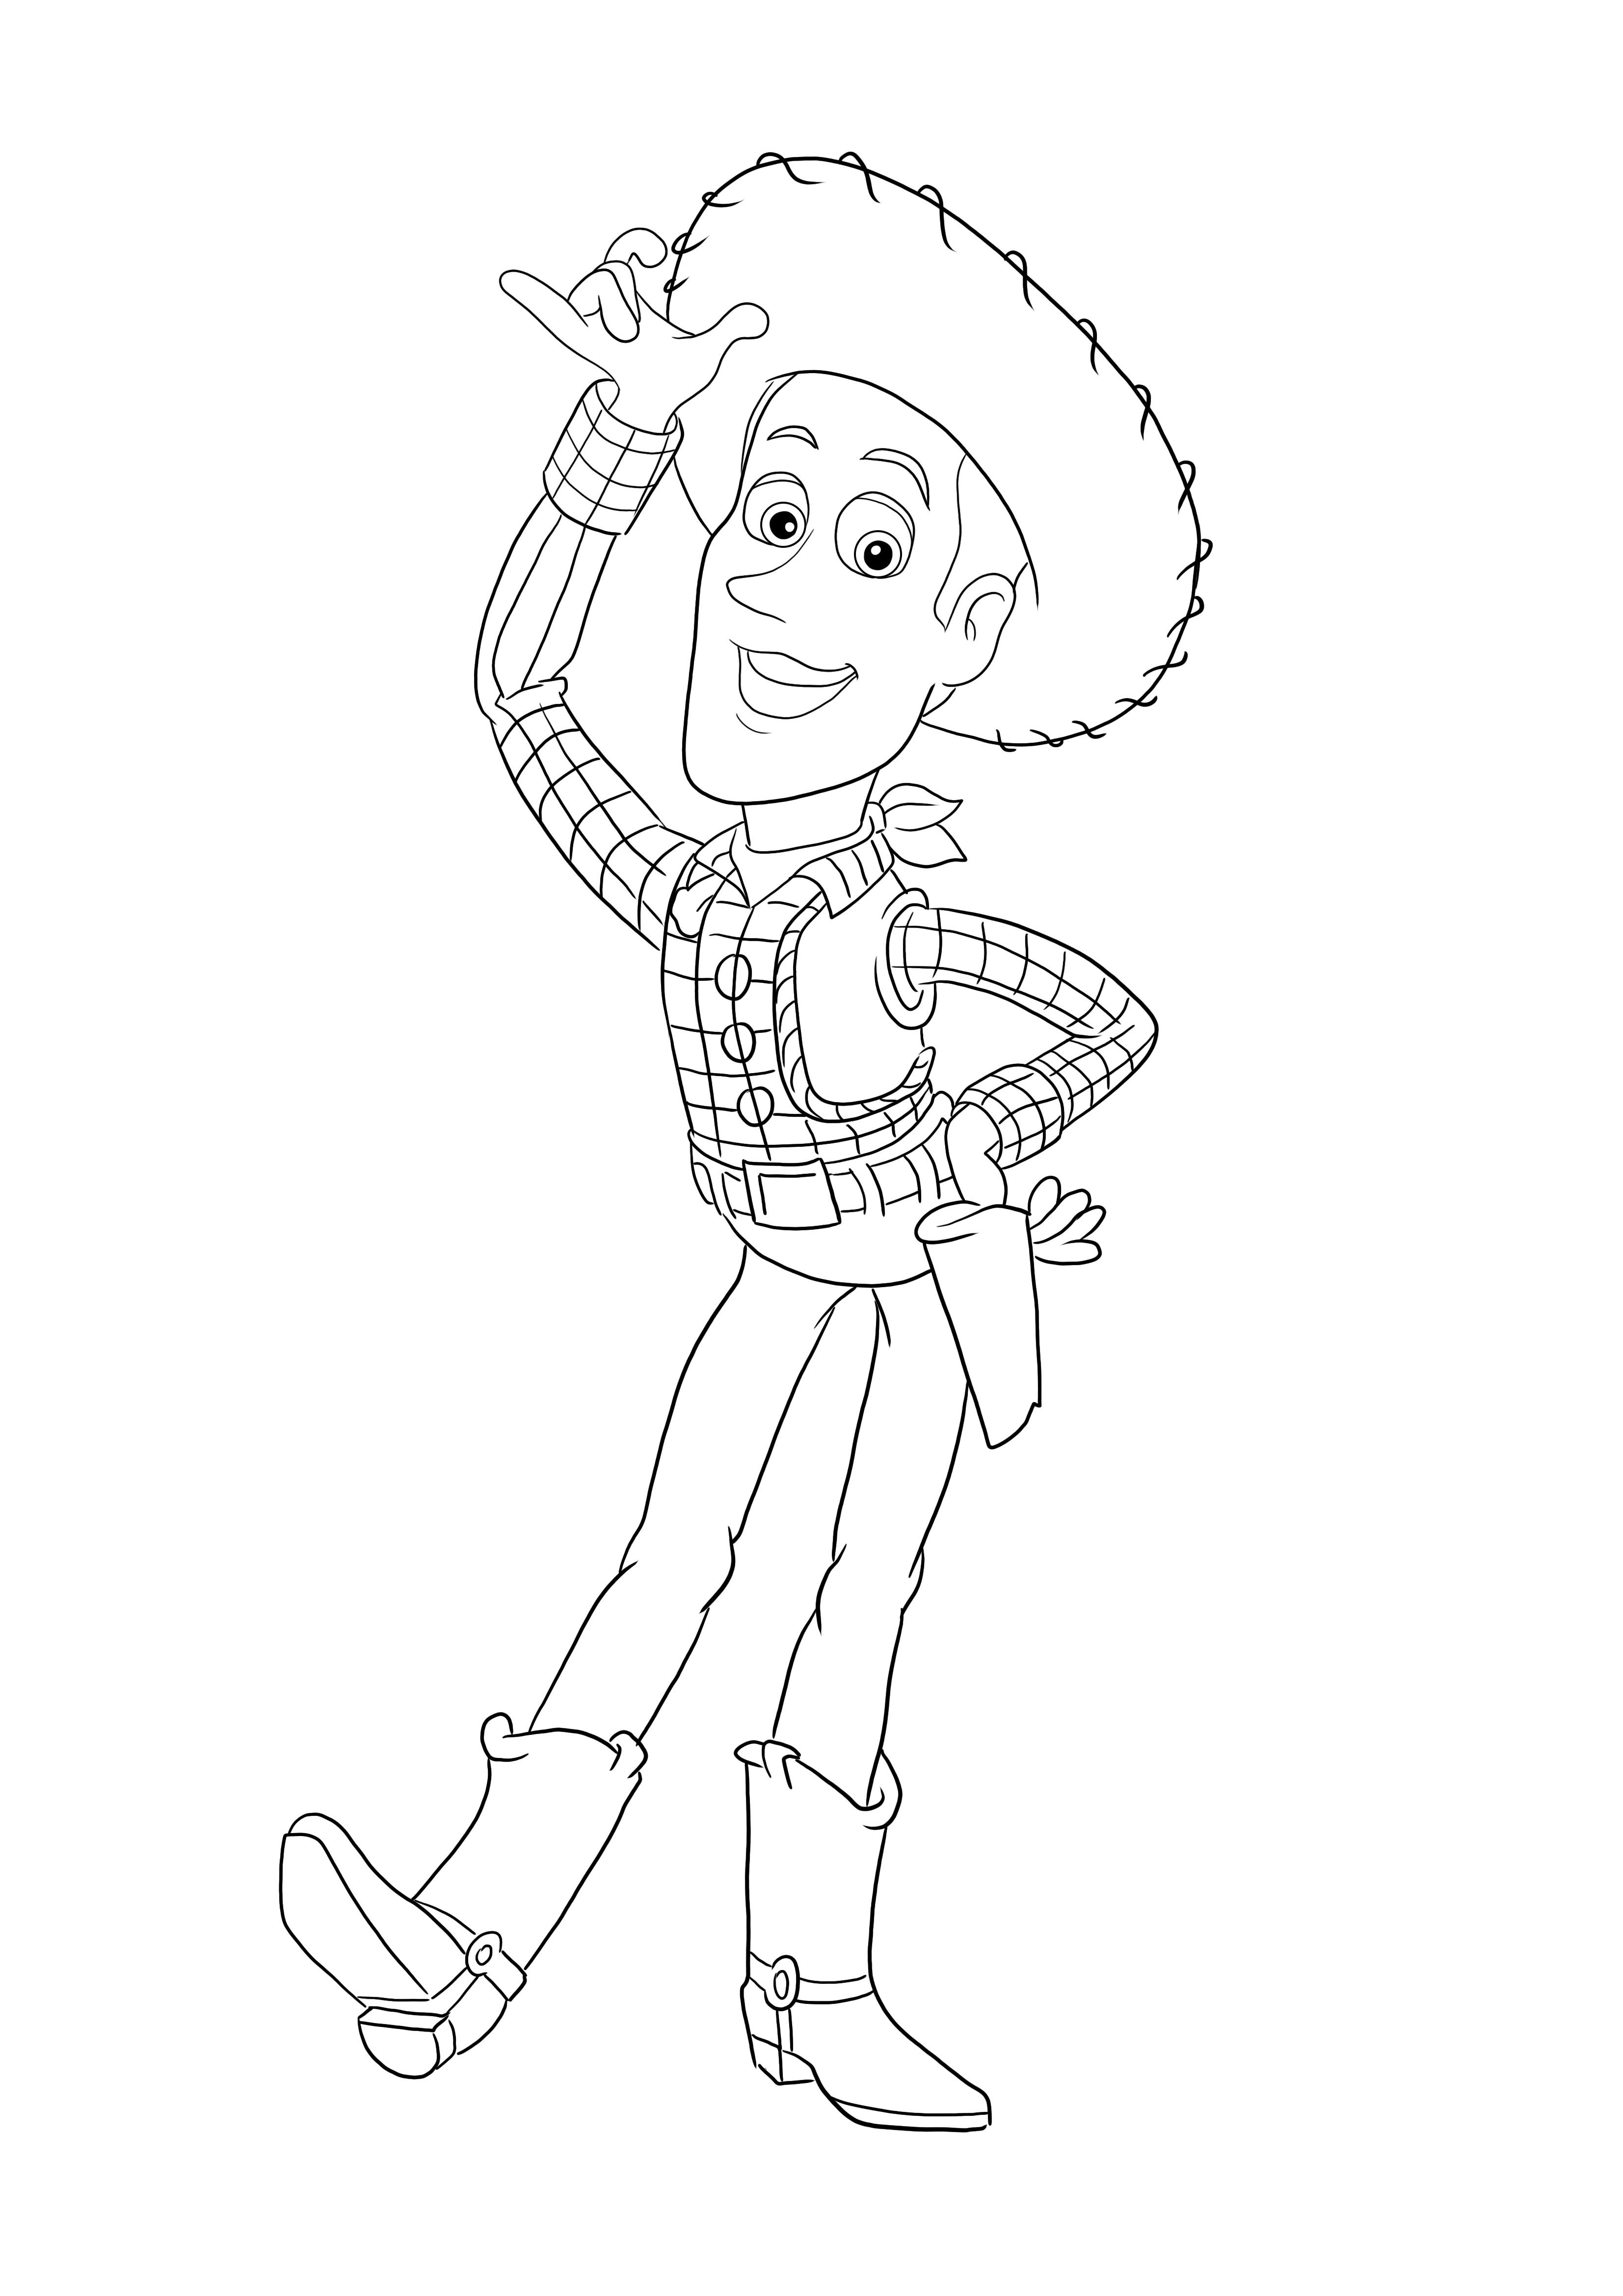 Toy Story'den Woody'nin boyama sayfaları her yaş için yazdırmak veya indirmek için ücretsiz